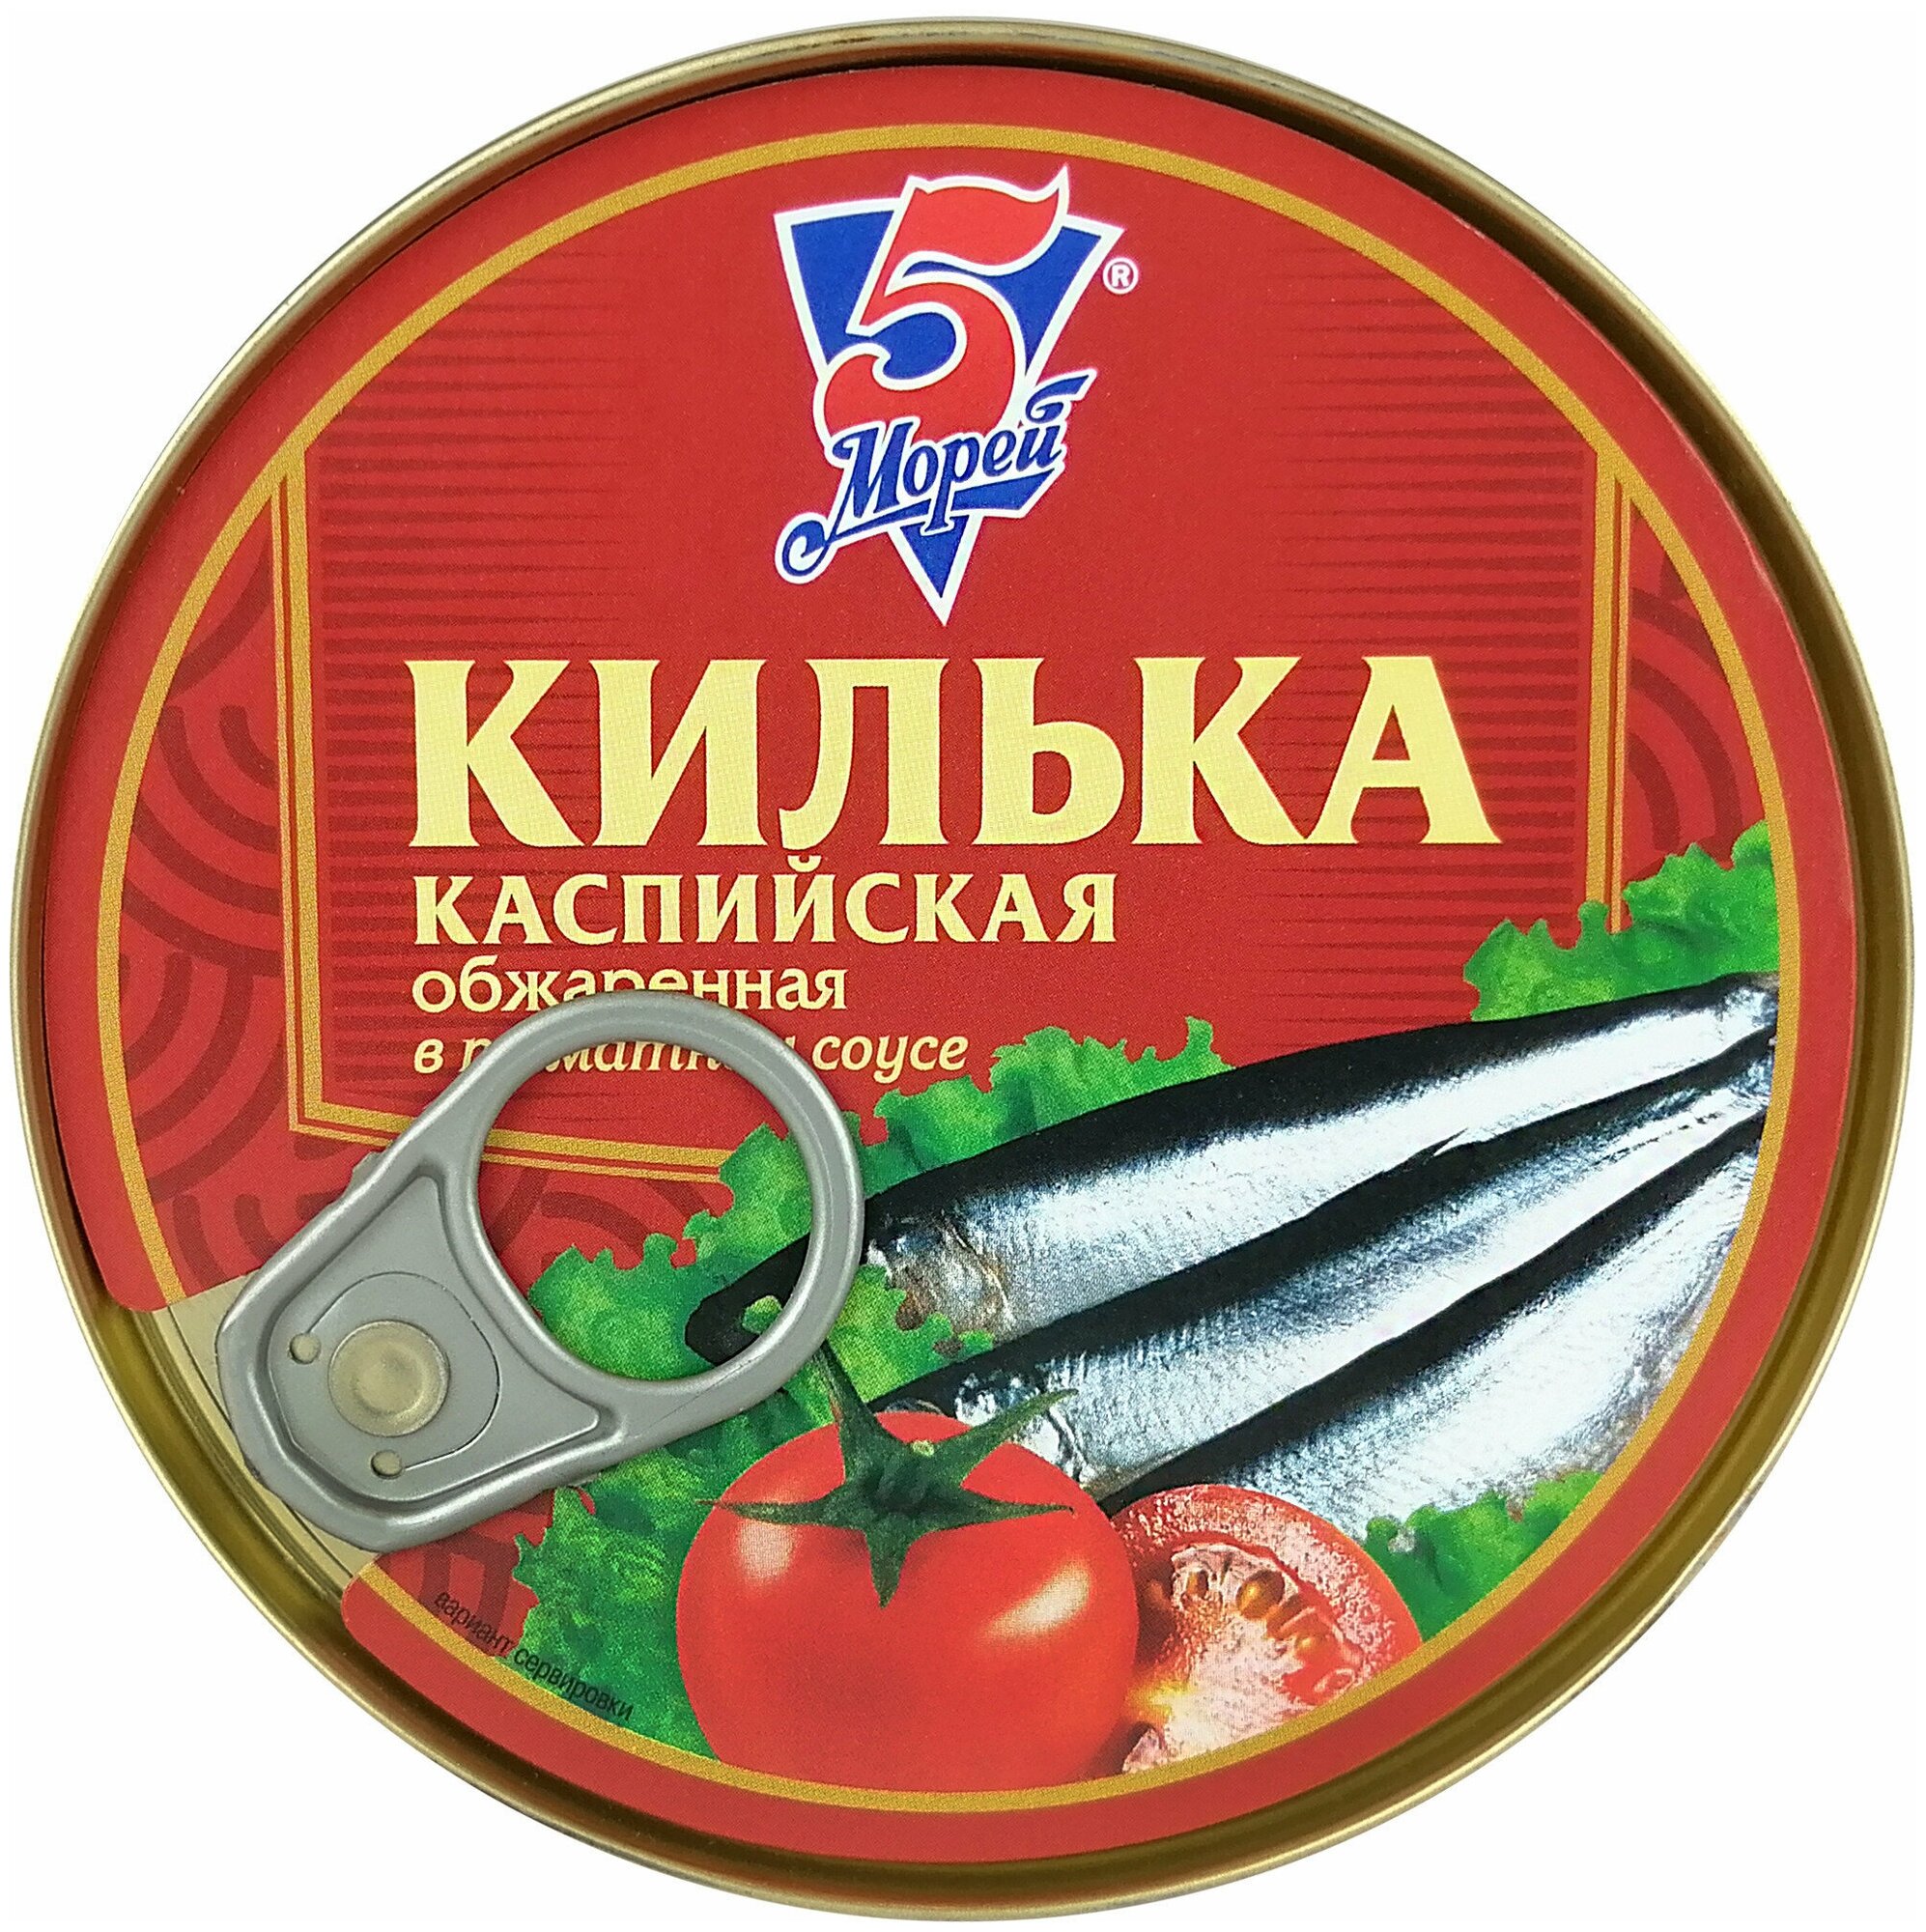 Консервы рыбные 5 Морей - Килька каспийская неразделанная в томатном соусе, 240 г - 4 шт